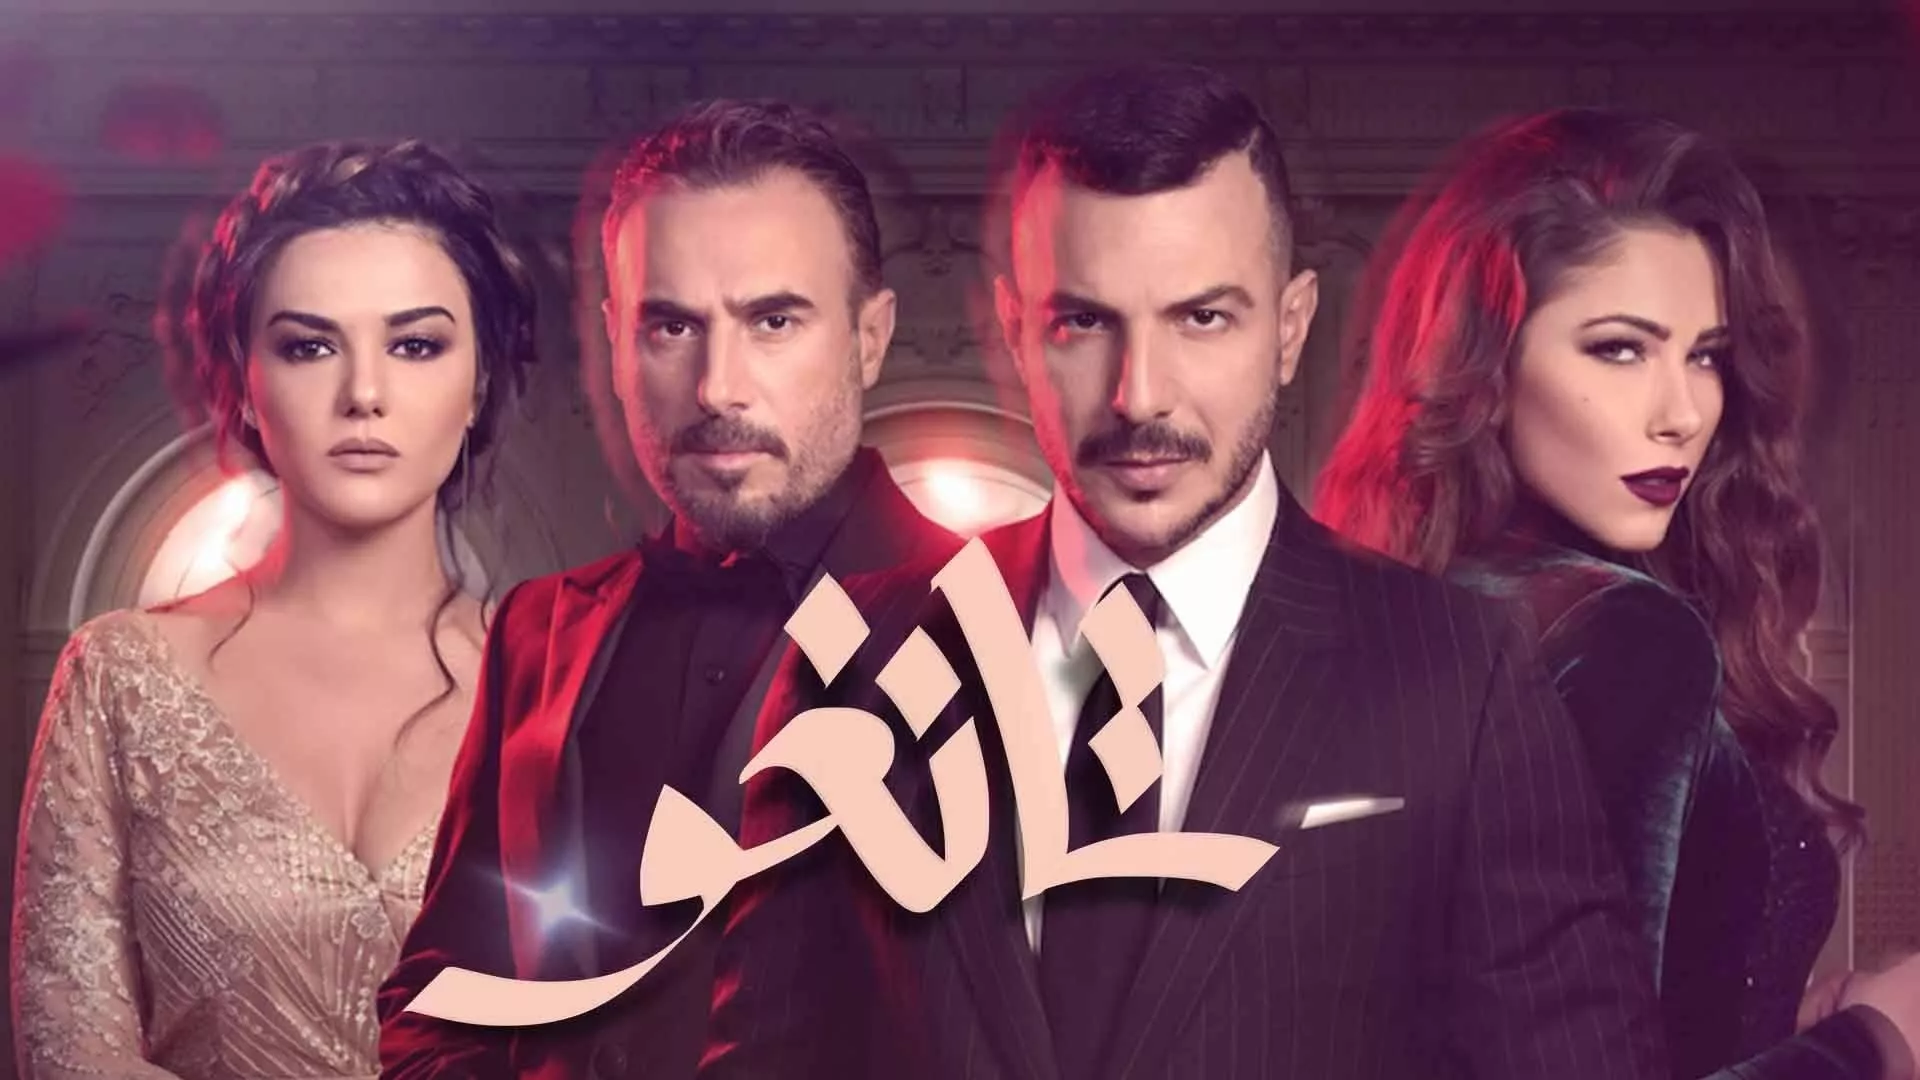 افضل المسلسلات العربية على نتفلكس... أي مسلسل لن تملّين من إعادة مشاهدته؟